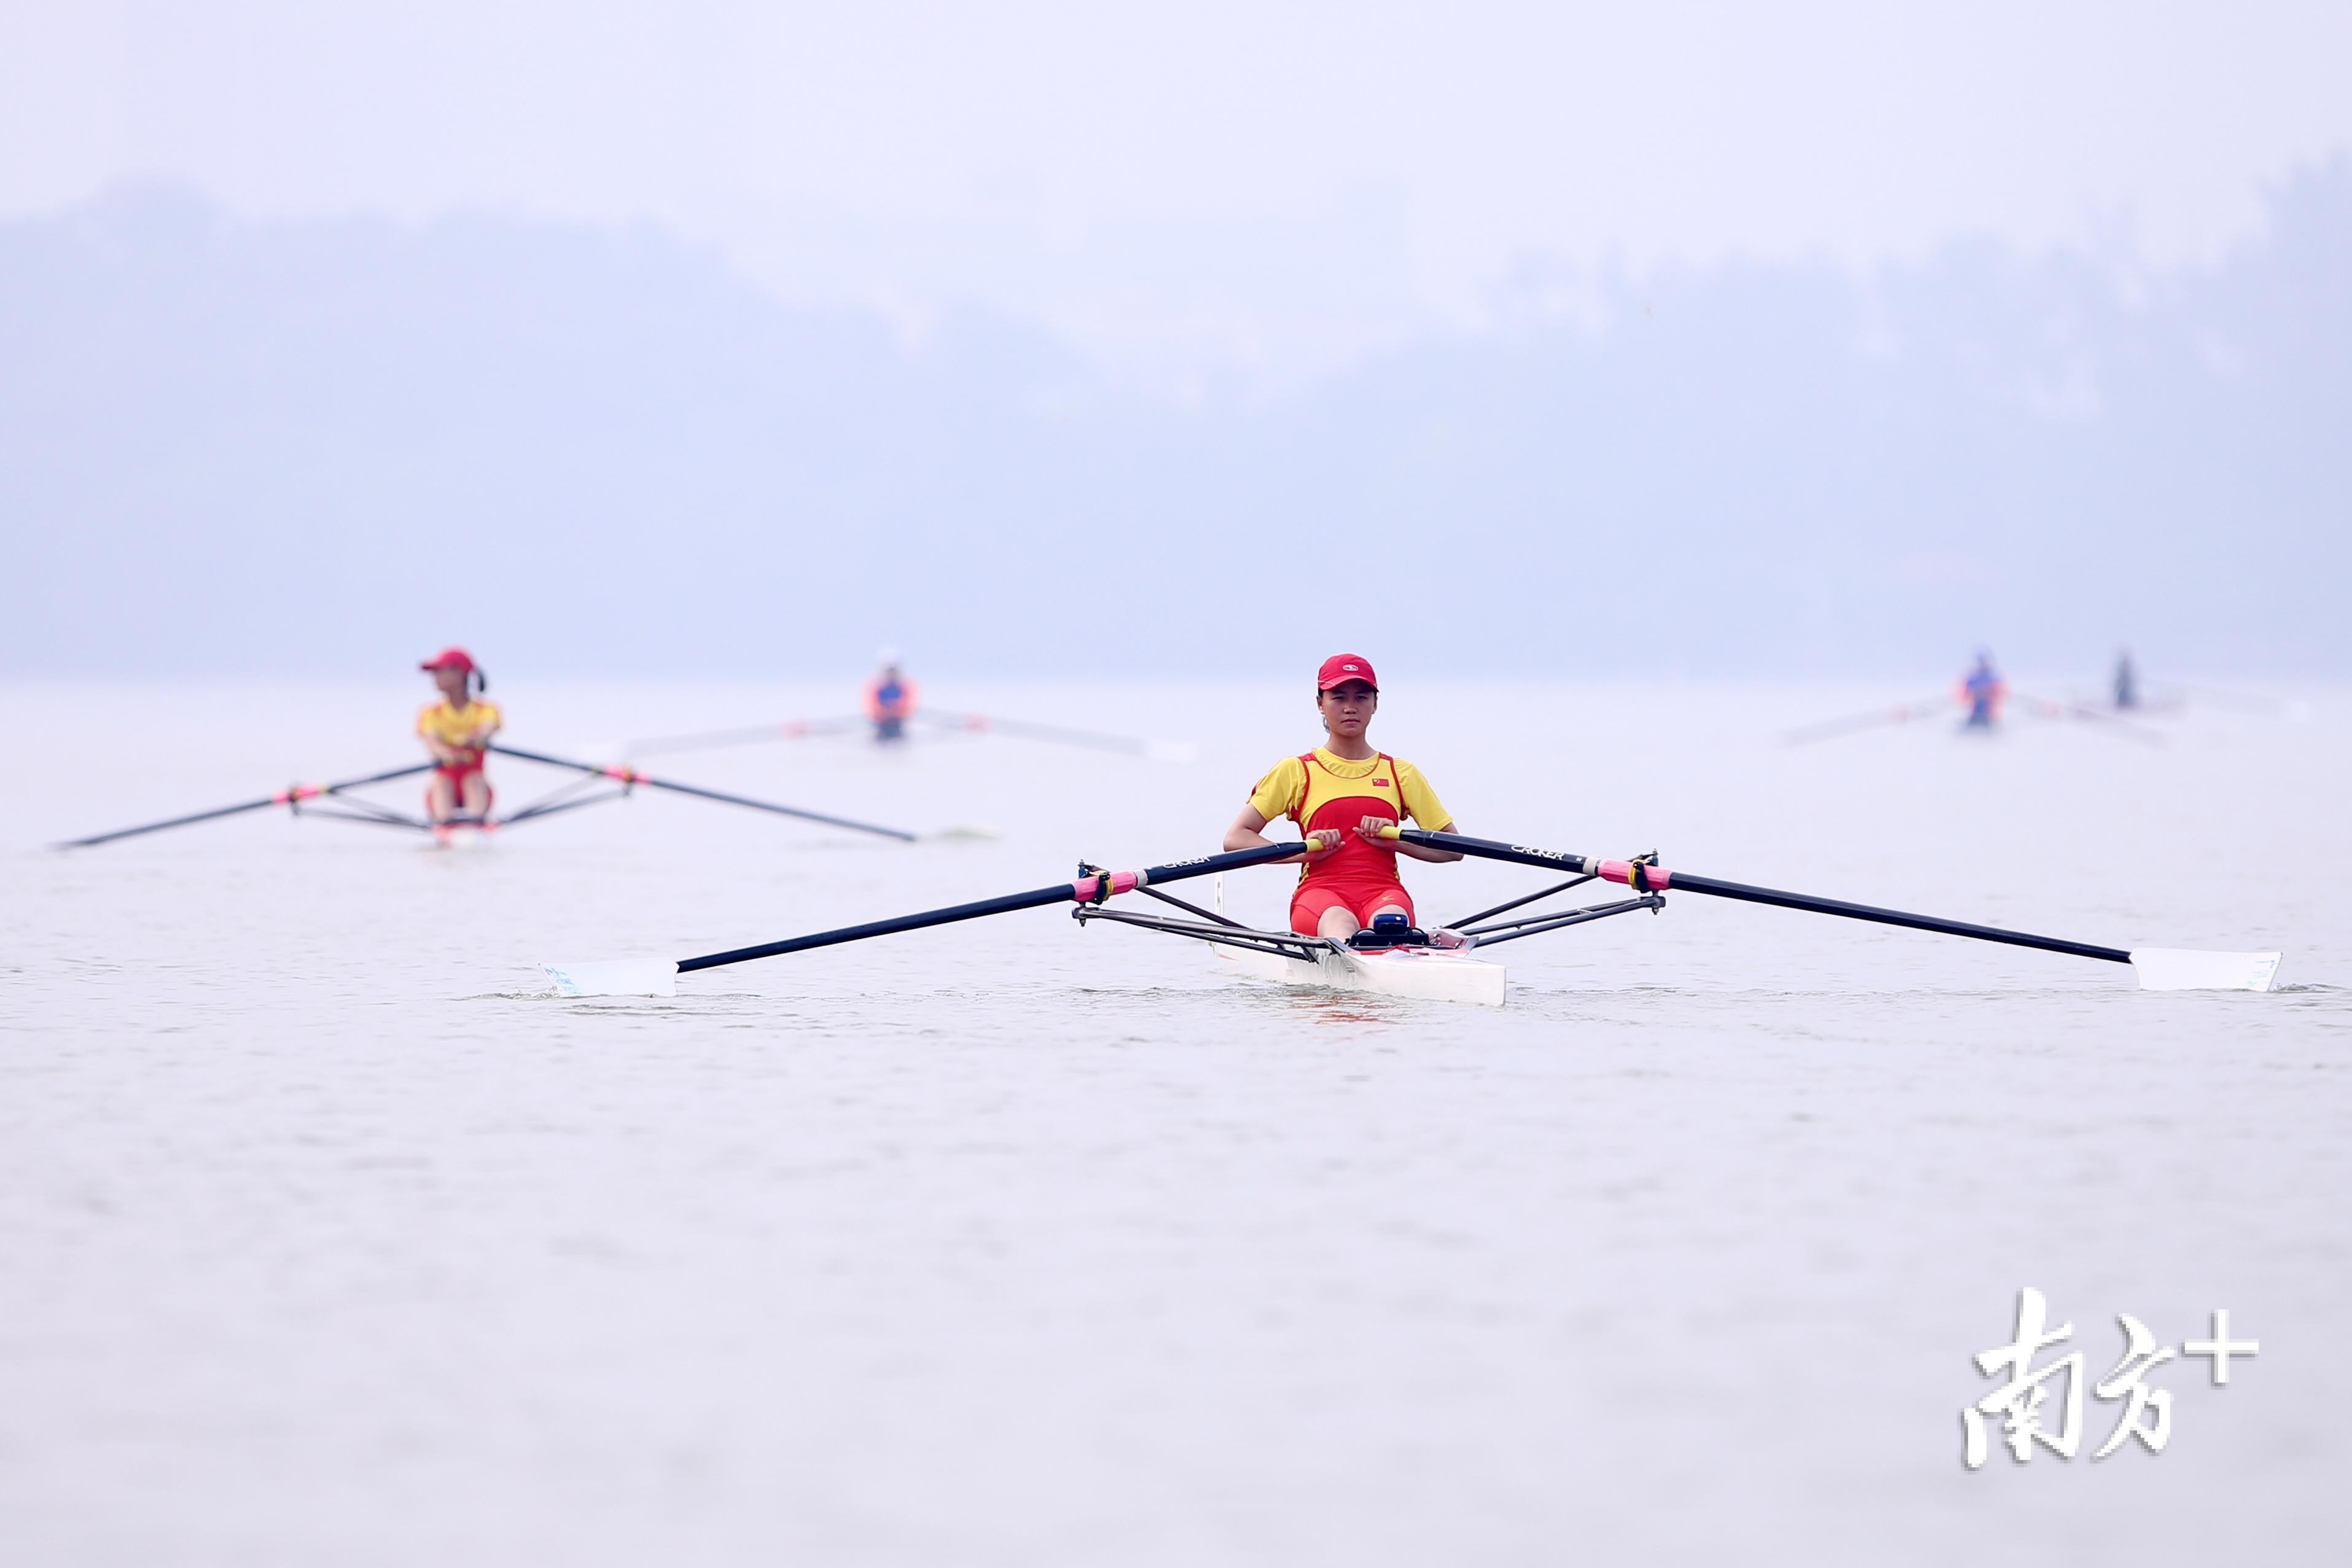 8月15日,省运会竞技体育组赛艇项目在肇庆市国家水上运动训练基地开赛